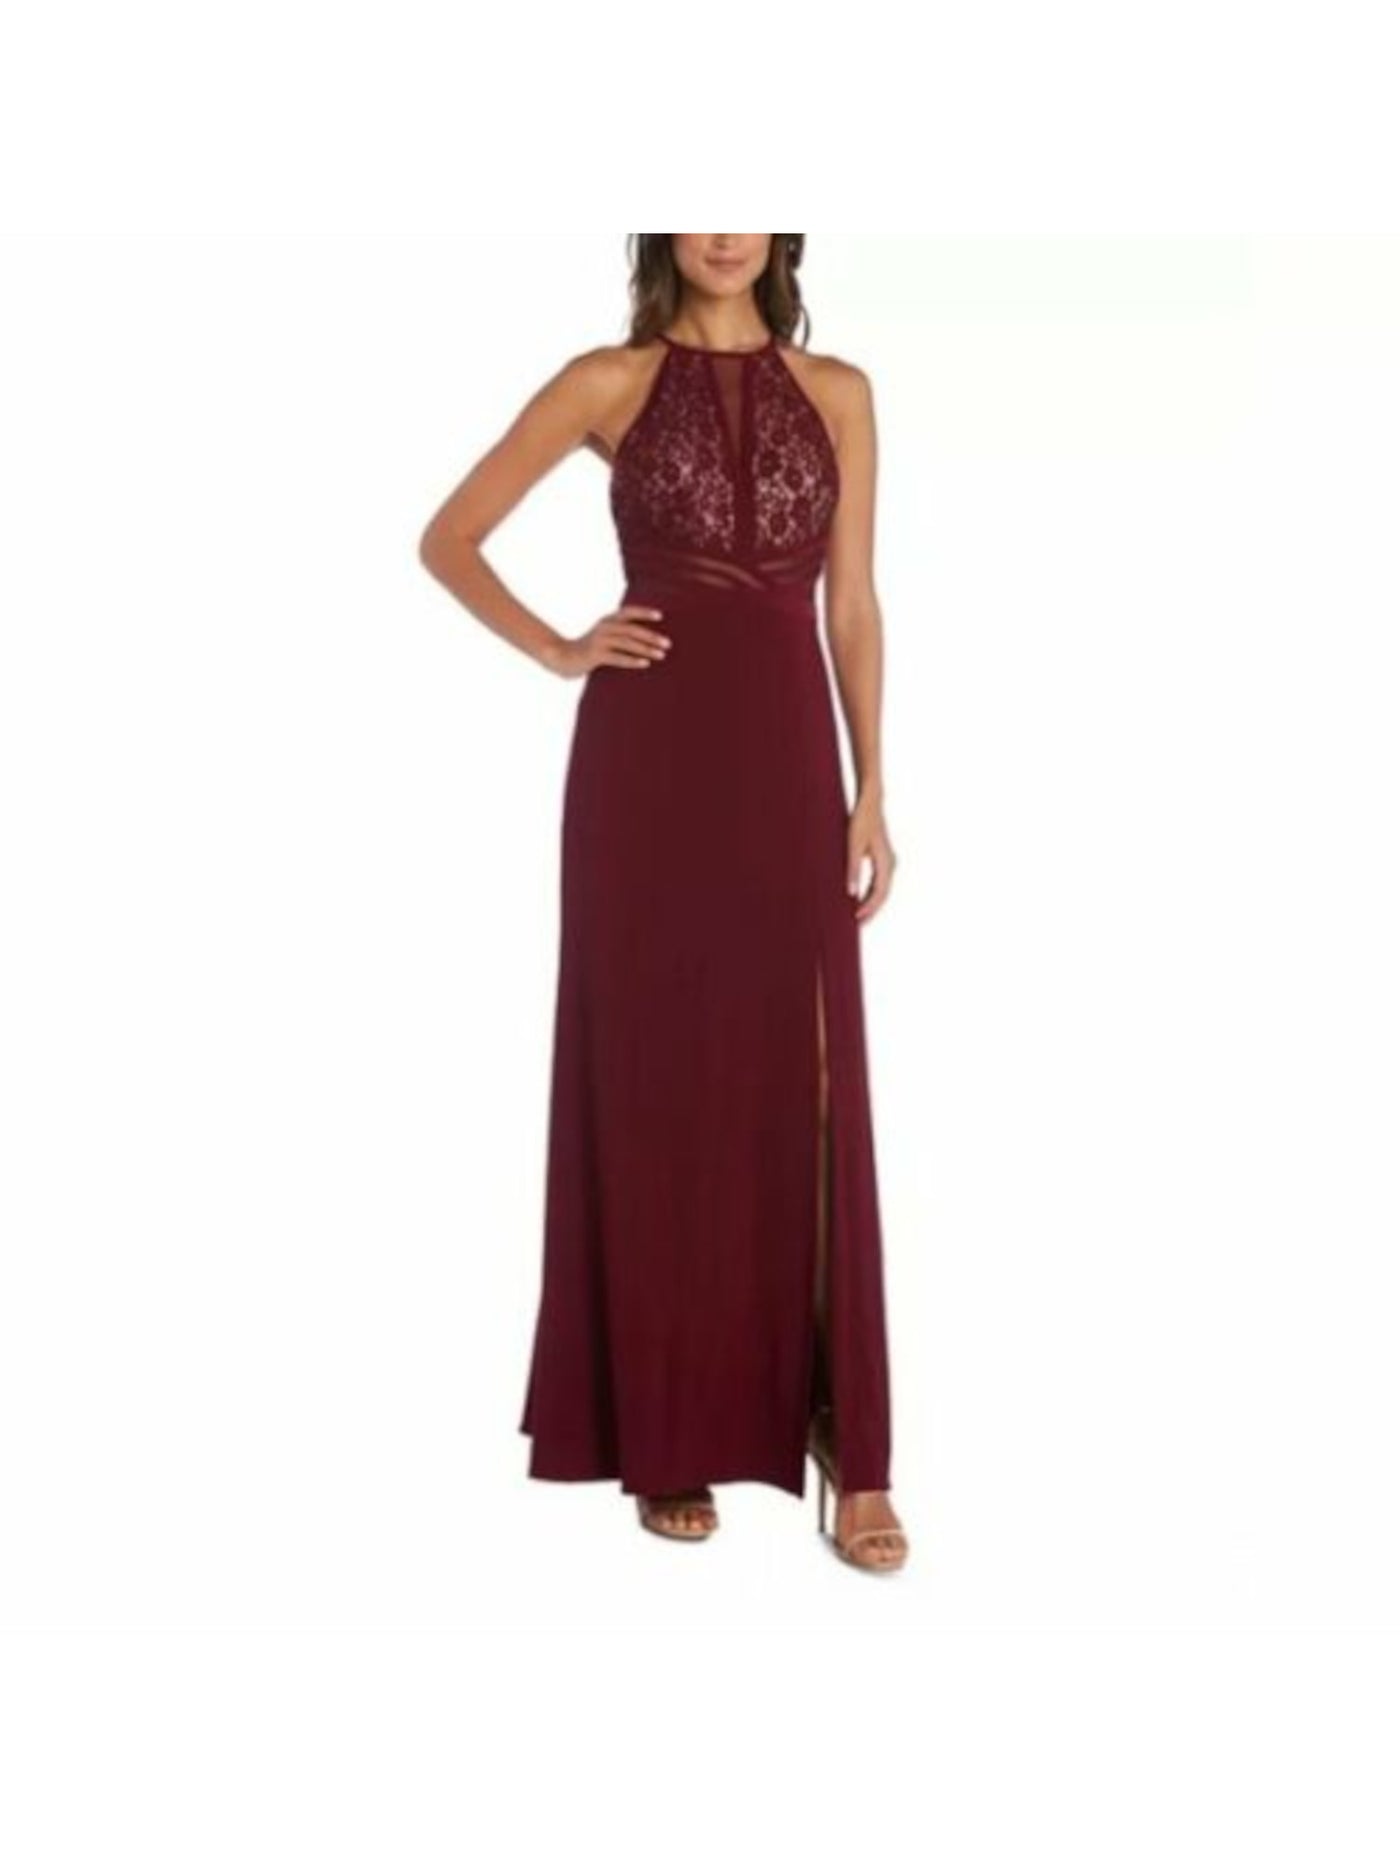 MORGAN & CO Womens Burgundy Glitter Slitted Mesh Sleeveless Halter Full-Length Formal Pleated Dress Juniors 3